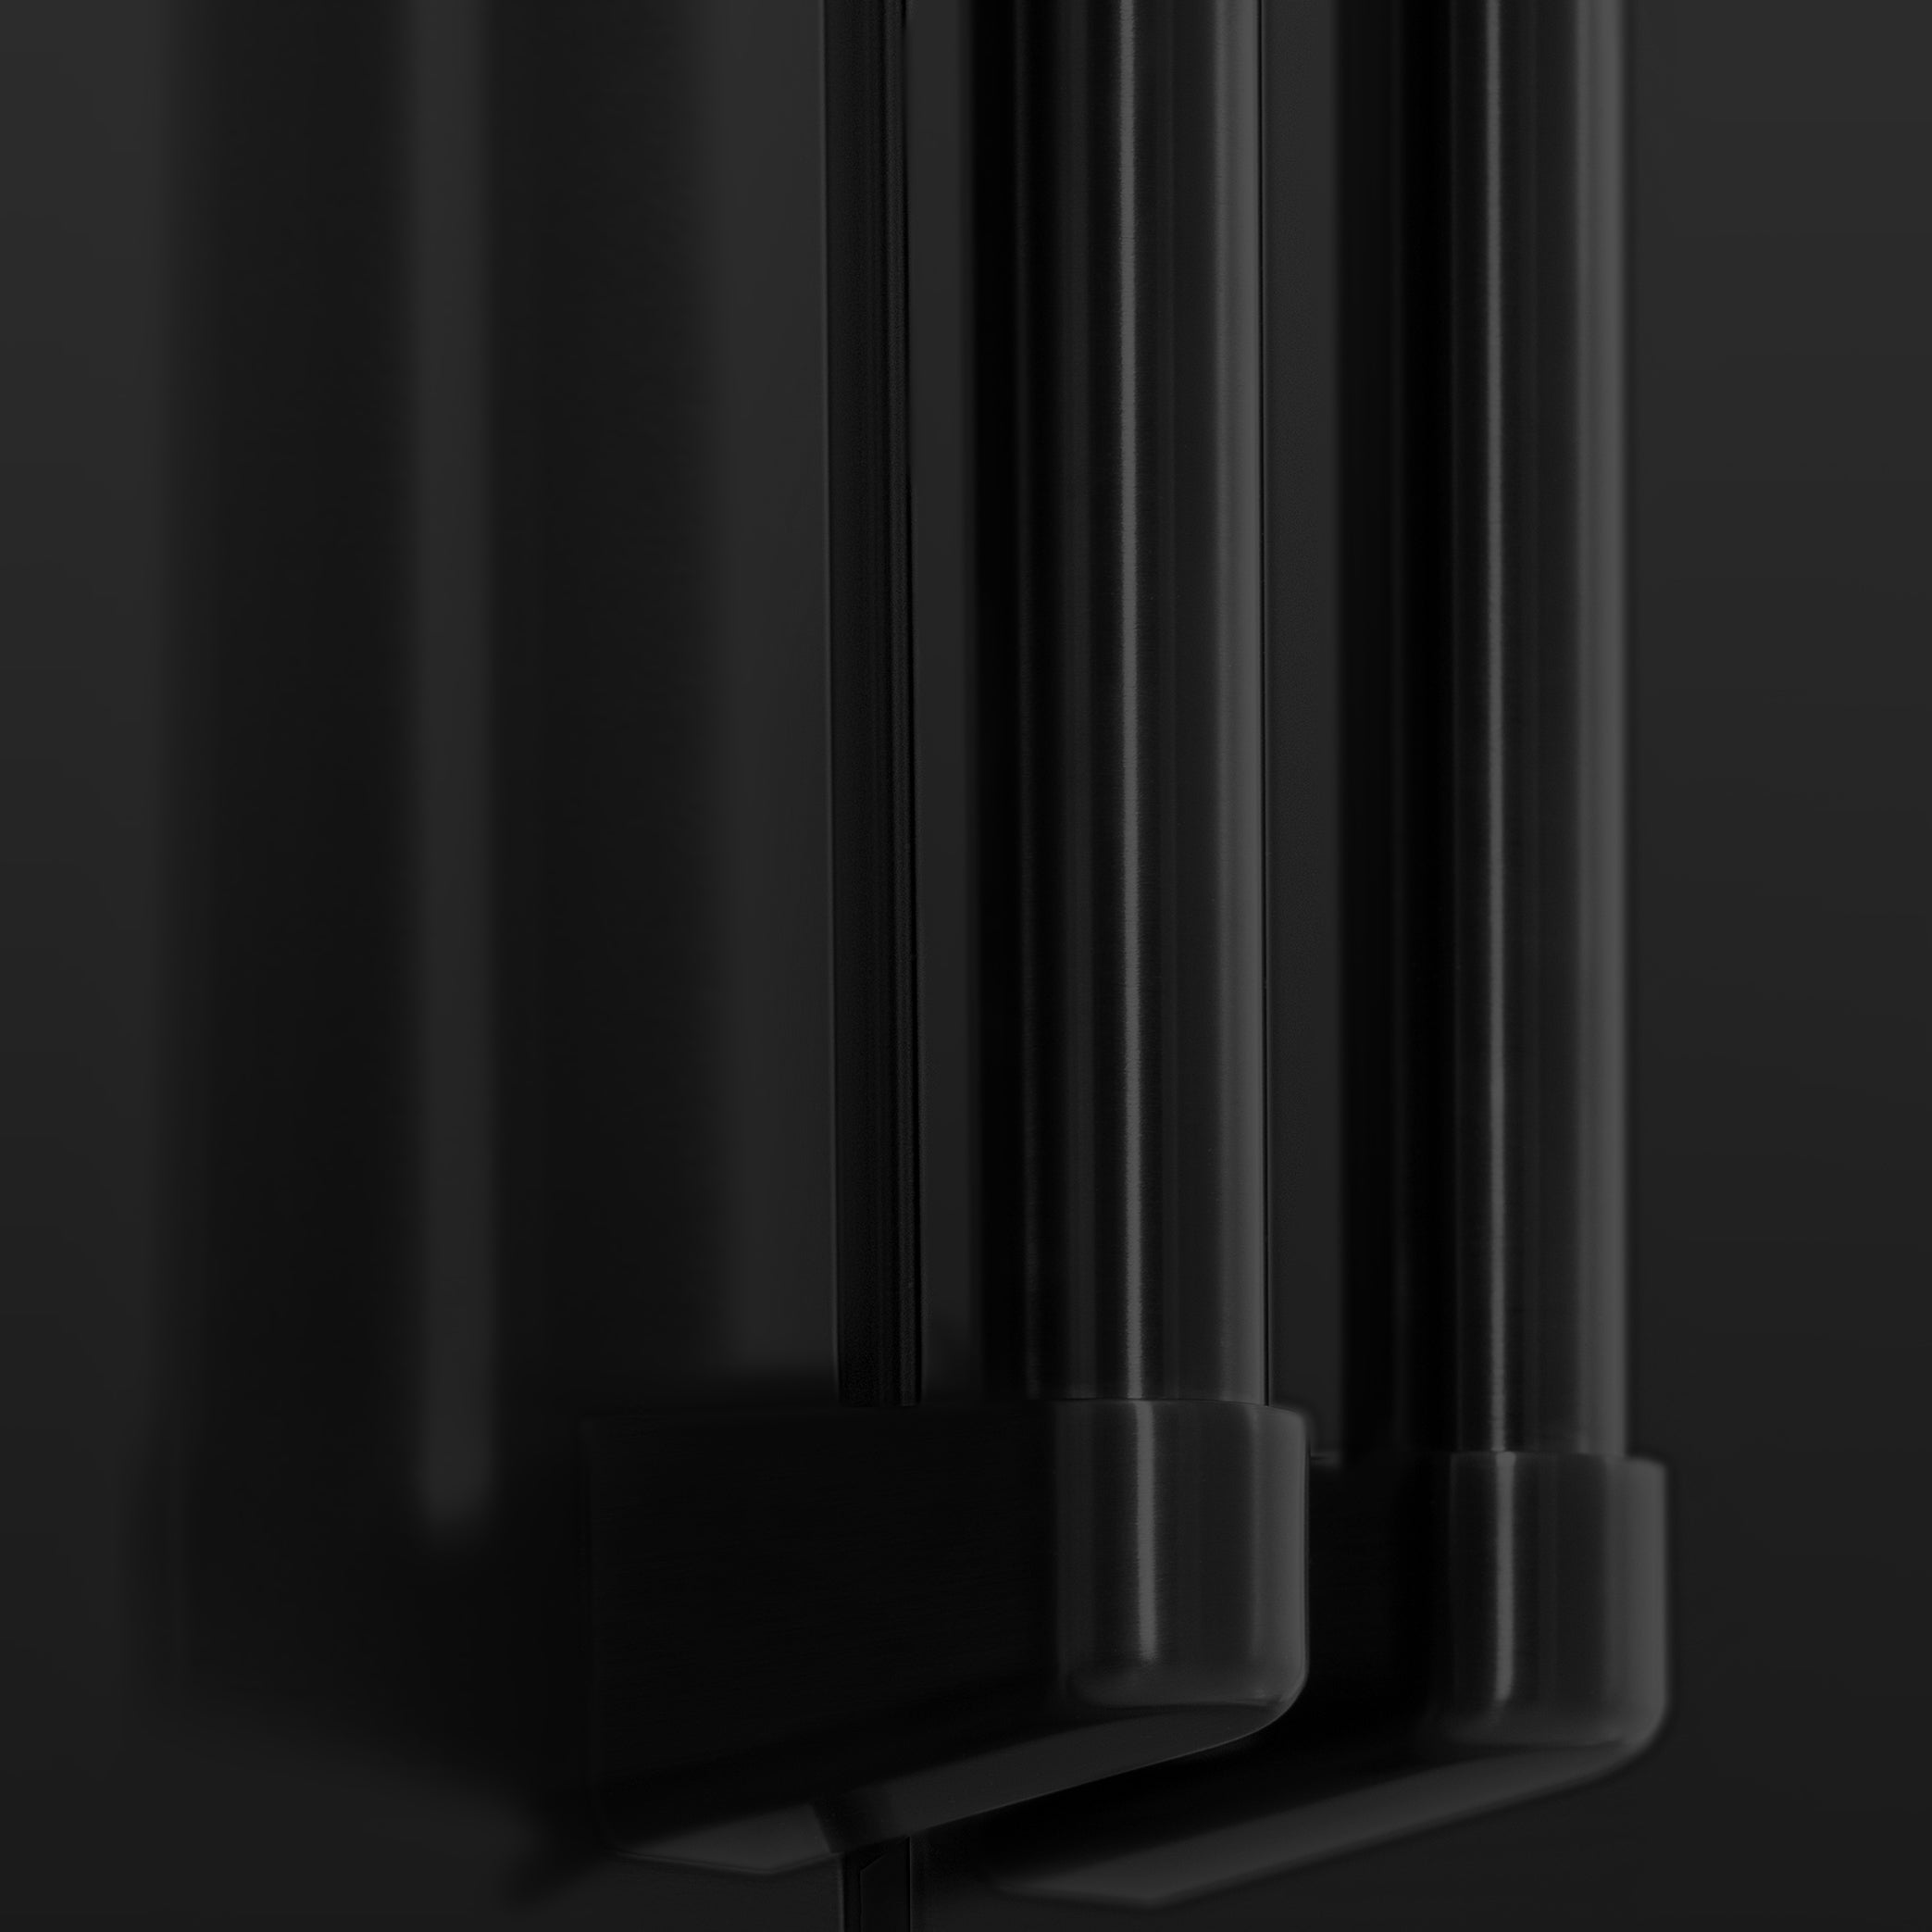 ZLINE 36" 21.6 cu. ft 4-Door French Door Refrigerator with Water and Ice Dispenser in Fingerprint Resistant Black Stainless Steel